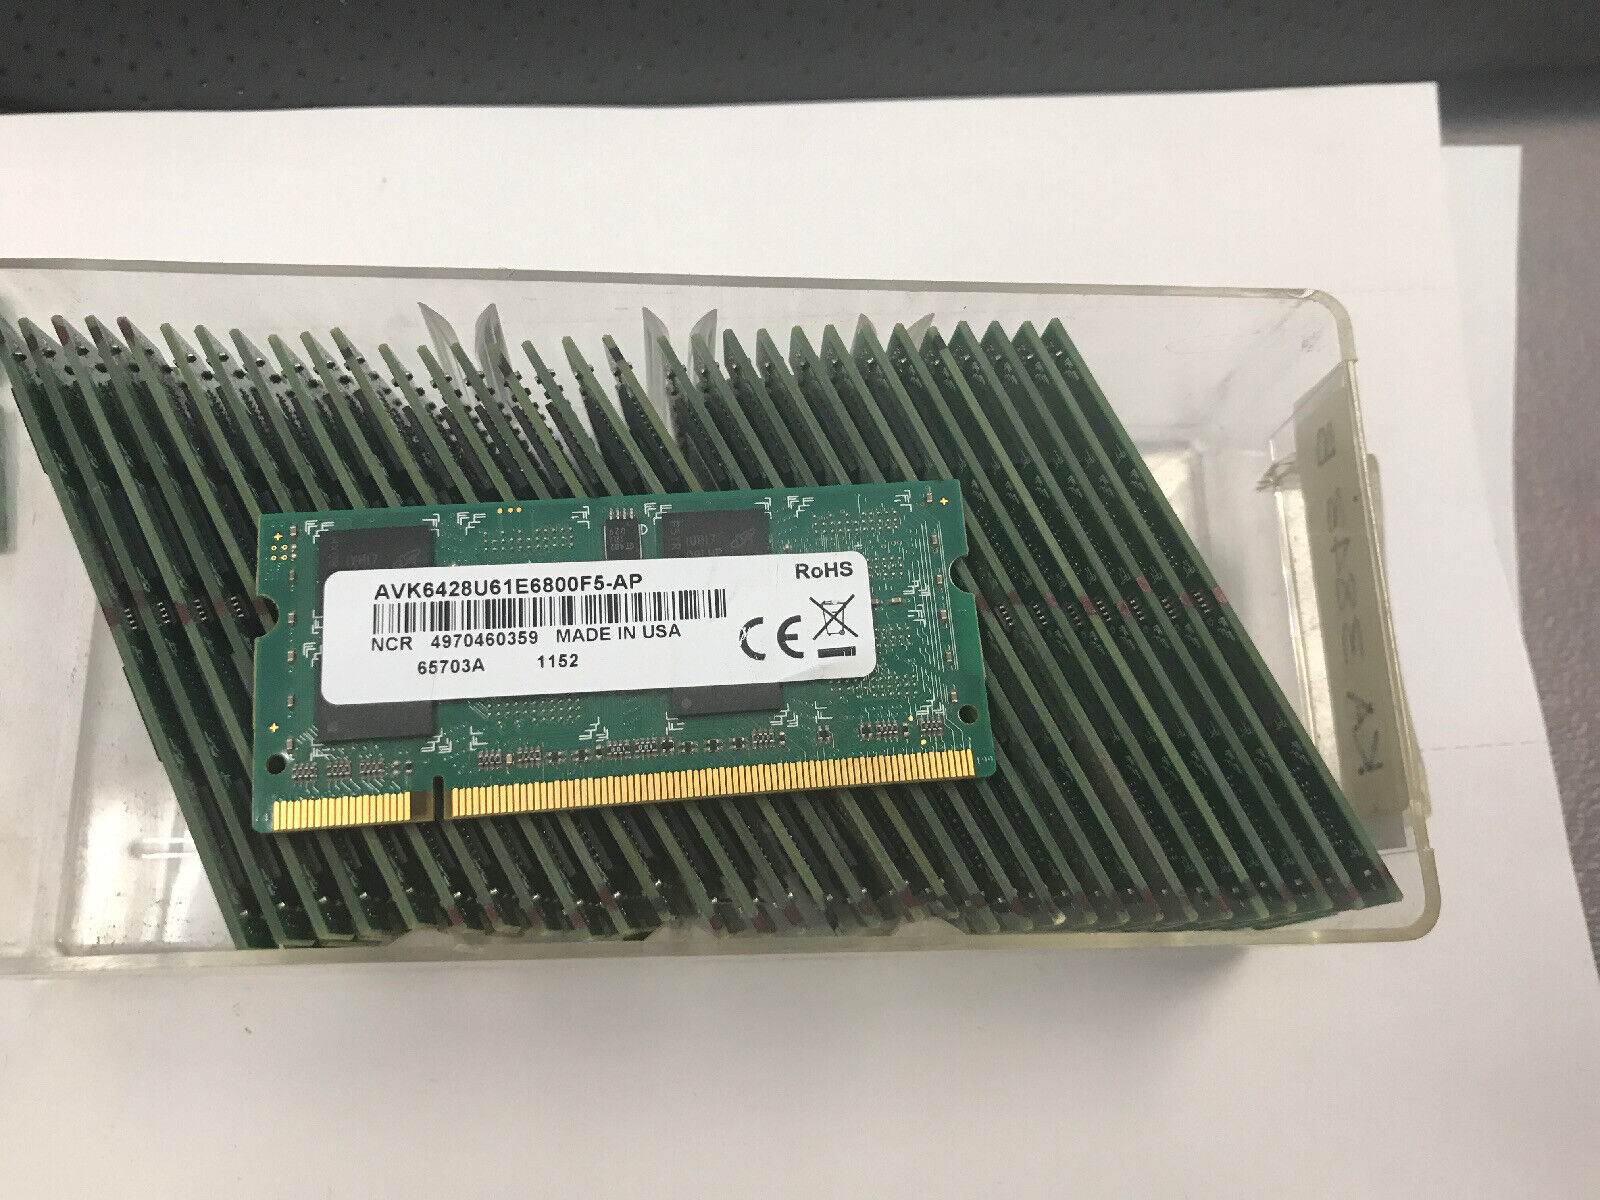 1 x 1GB NCR Avant Tech AVK6428U61E6800F5-AP PC2-6400 1.8V SODIMM DDR2 MEMORY